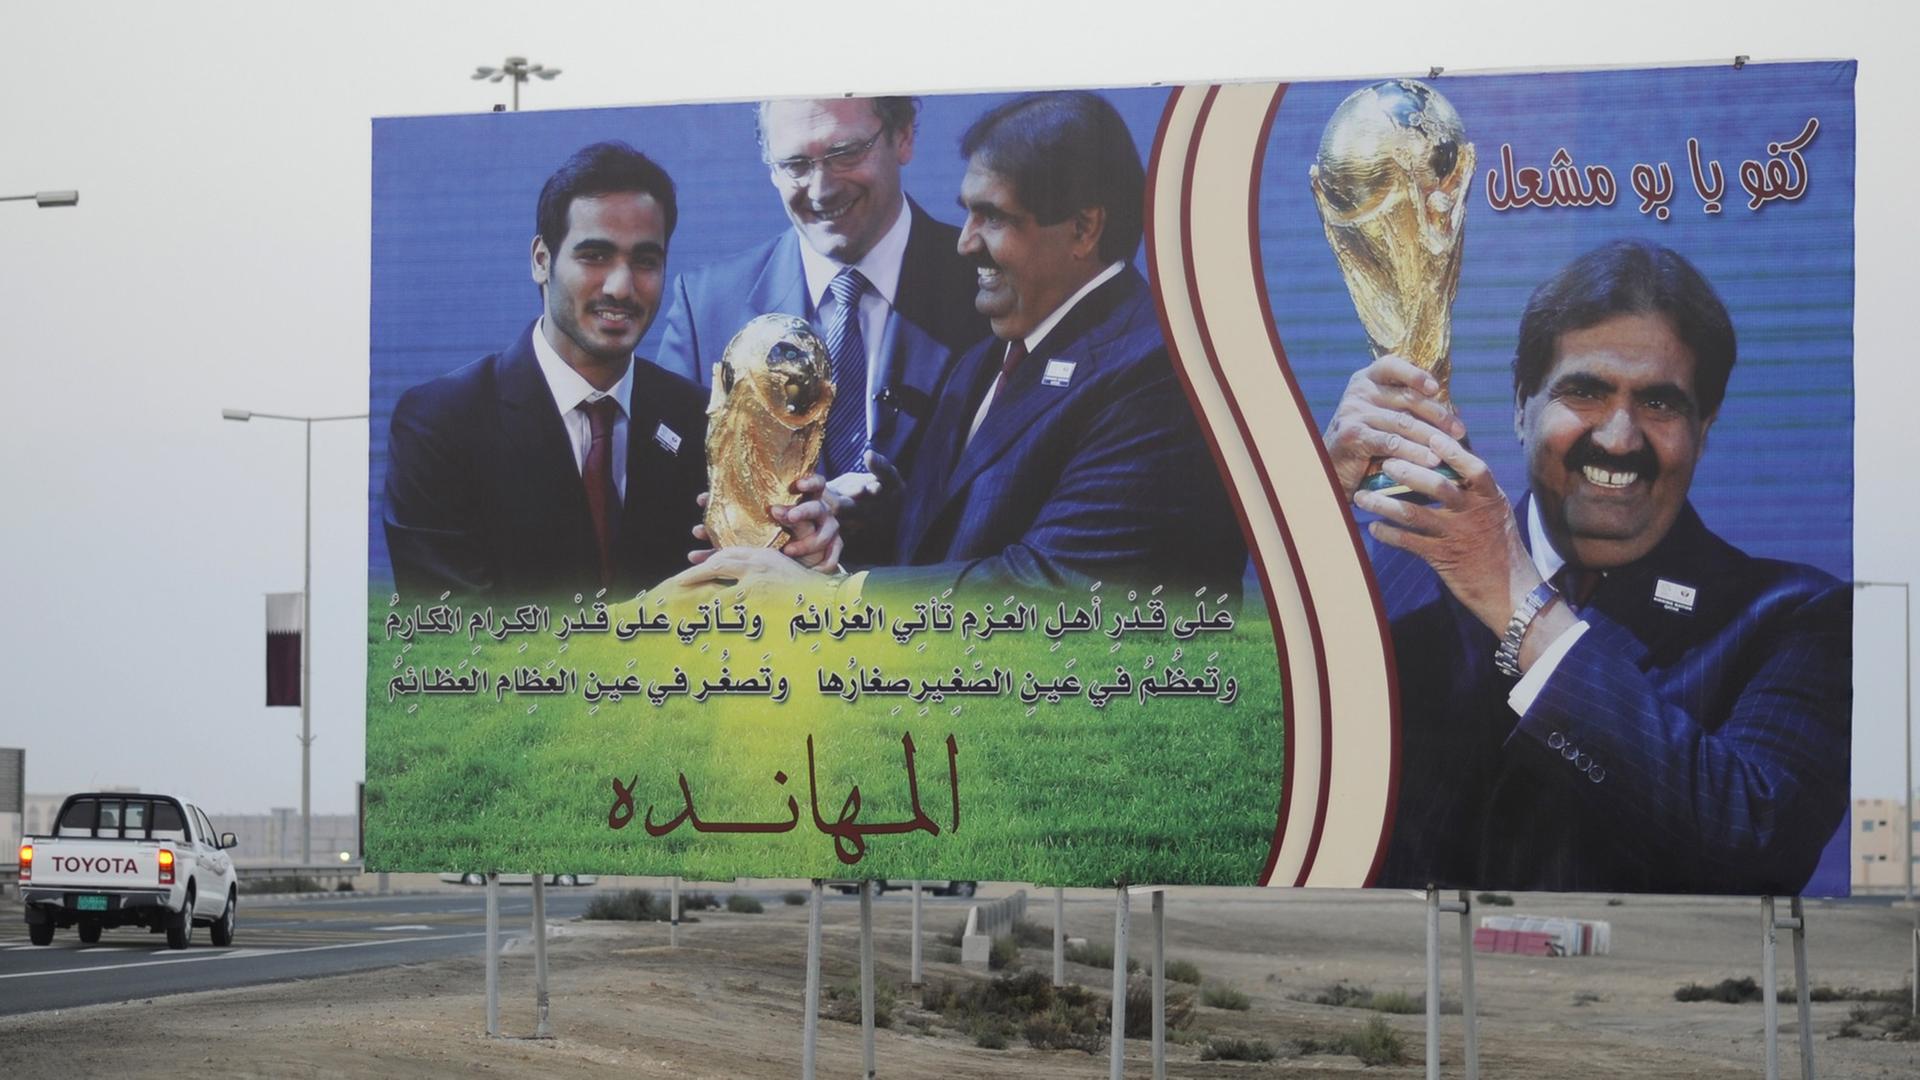 Plakat in Katar mit Werbung für die Fußball-Weltmeisterschaft.